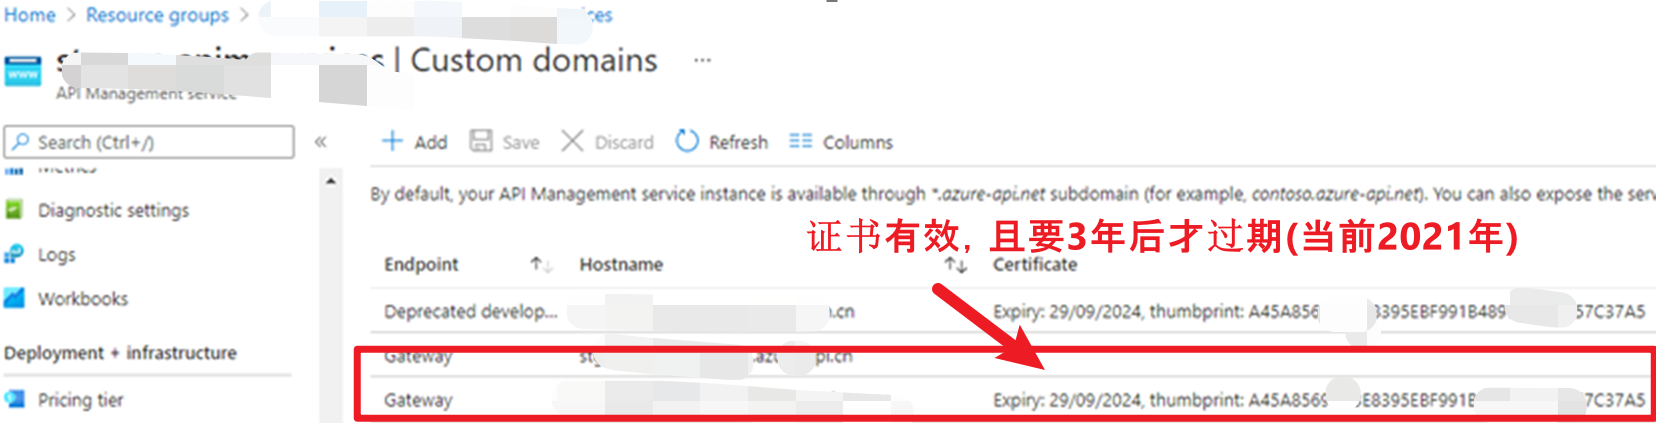 no client certificate presented ako mac